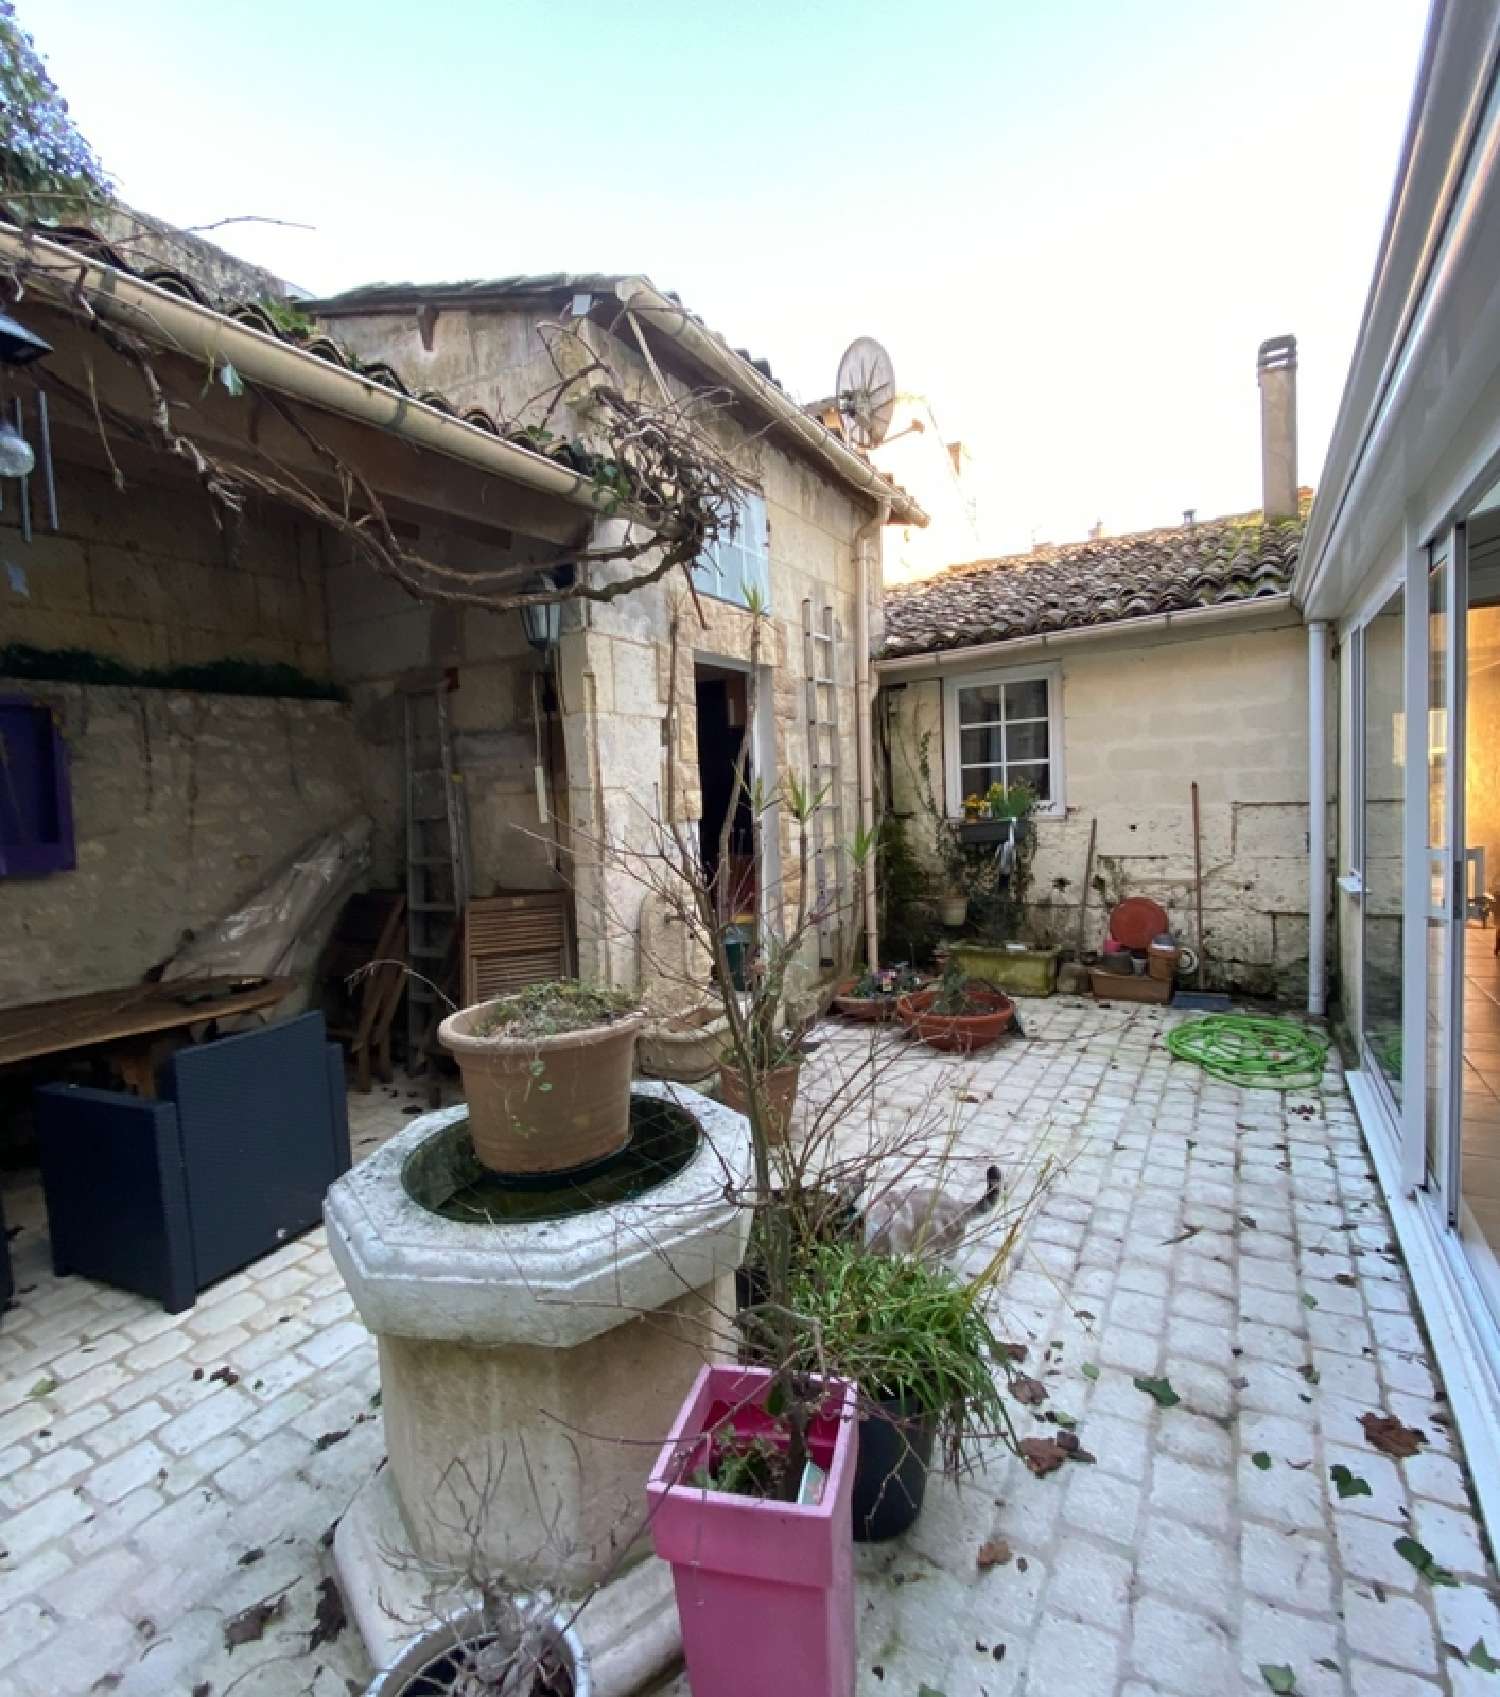  à vendre maison Ruelle-sur-Touvre Charente 1